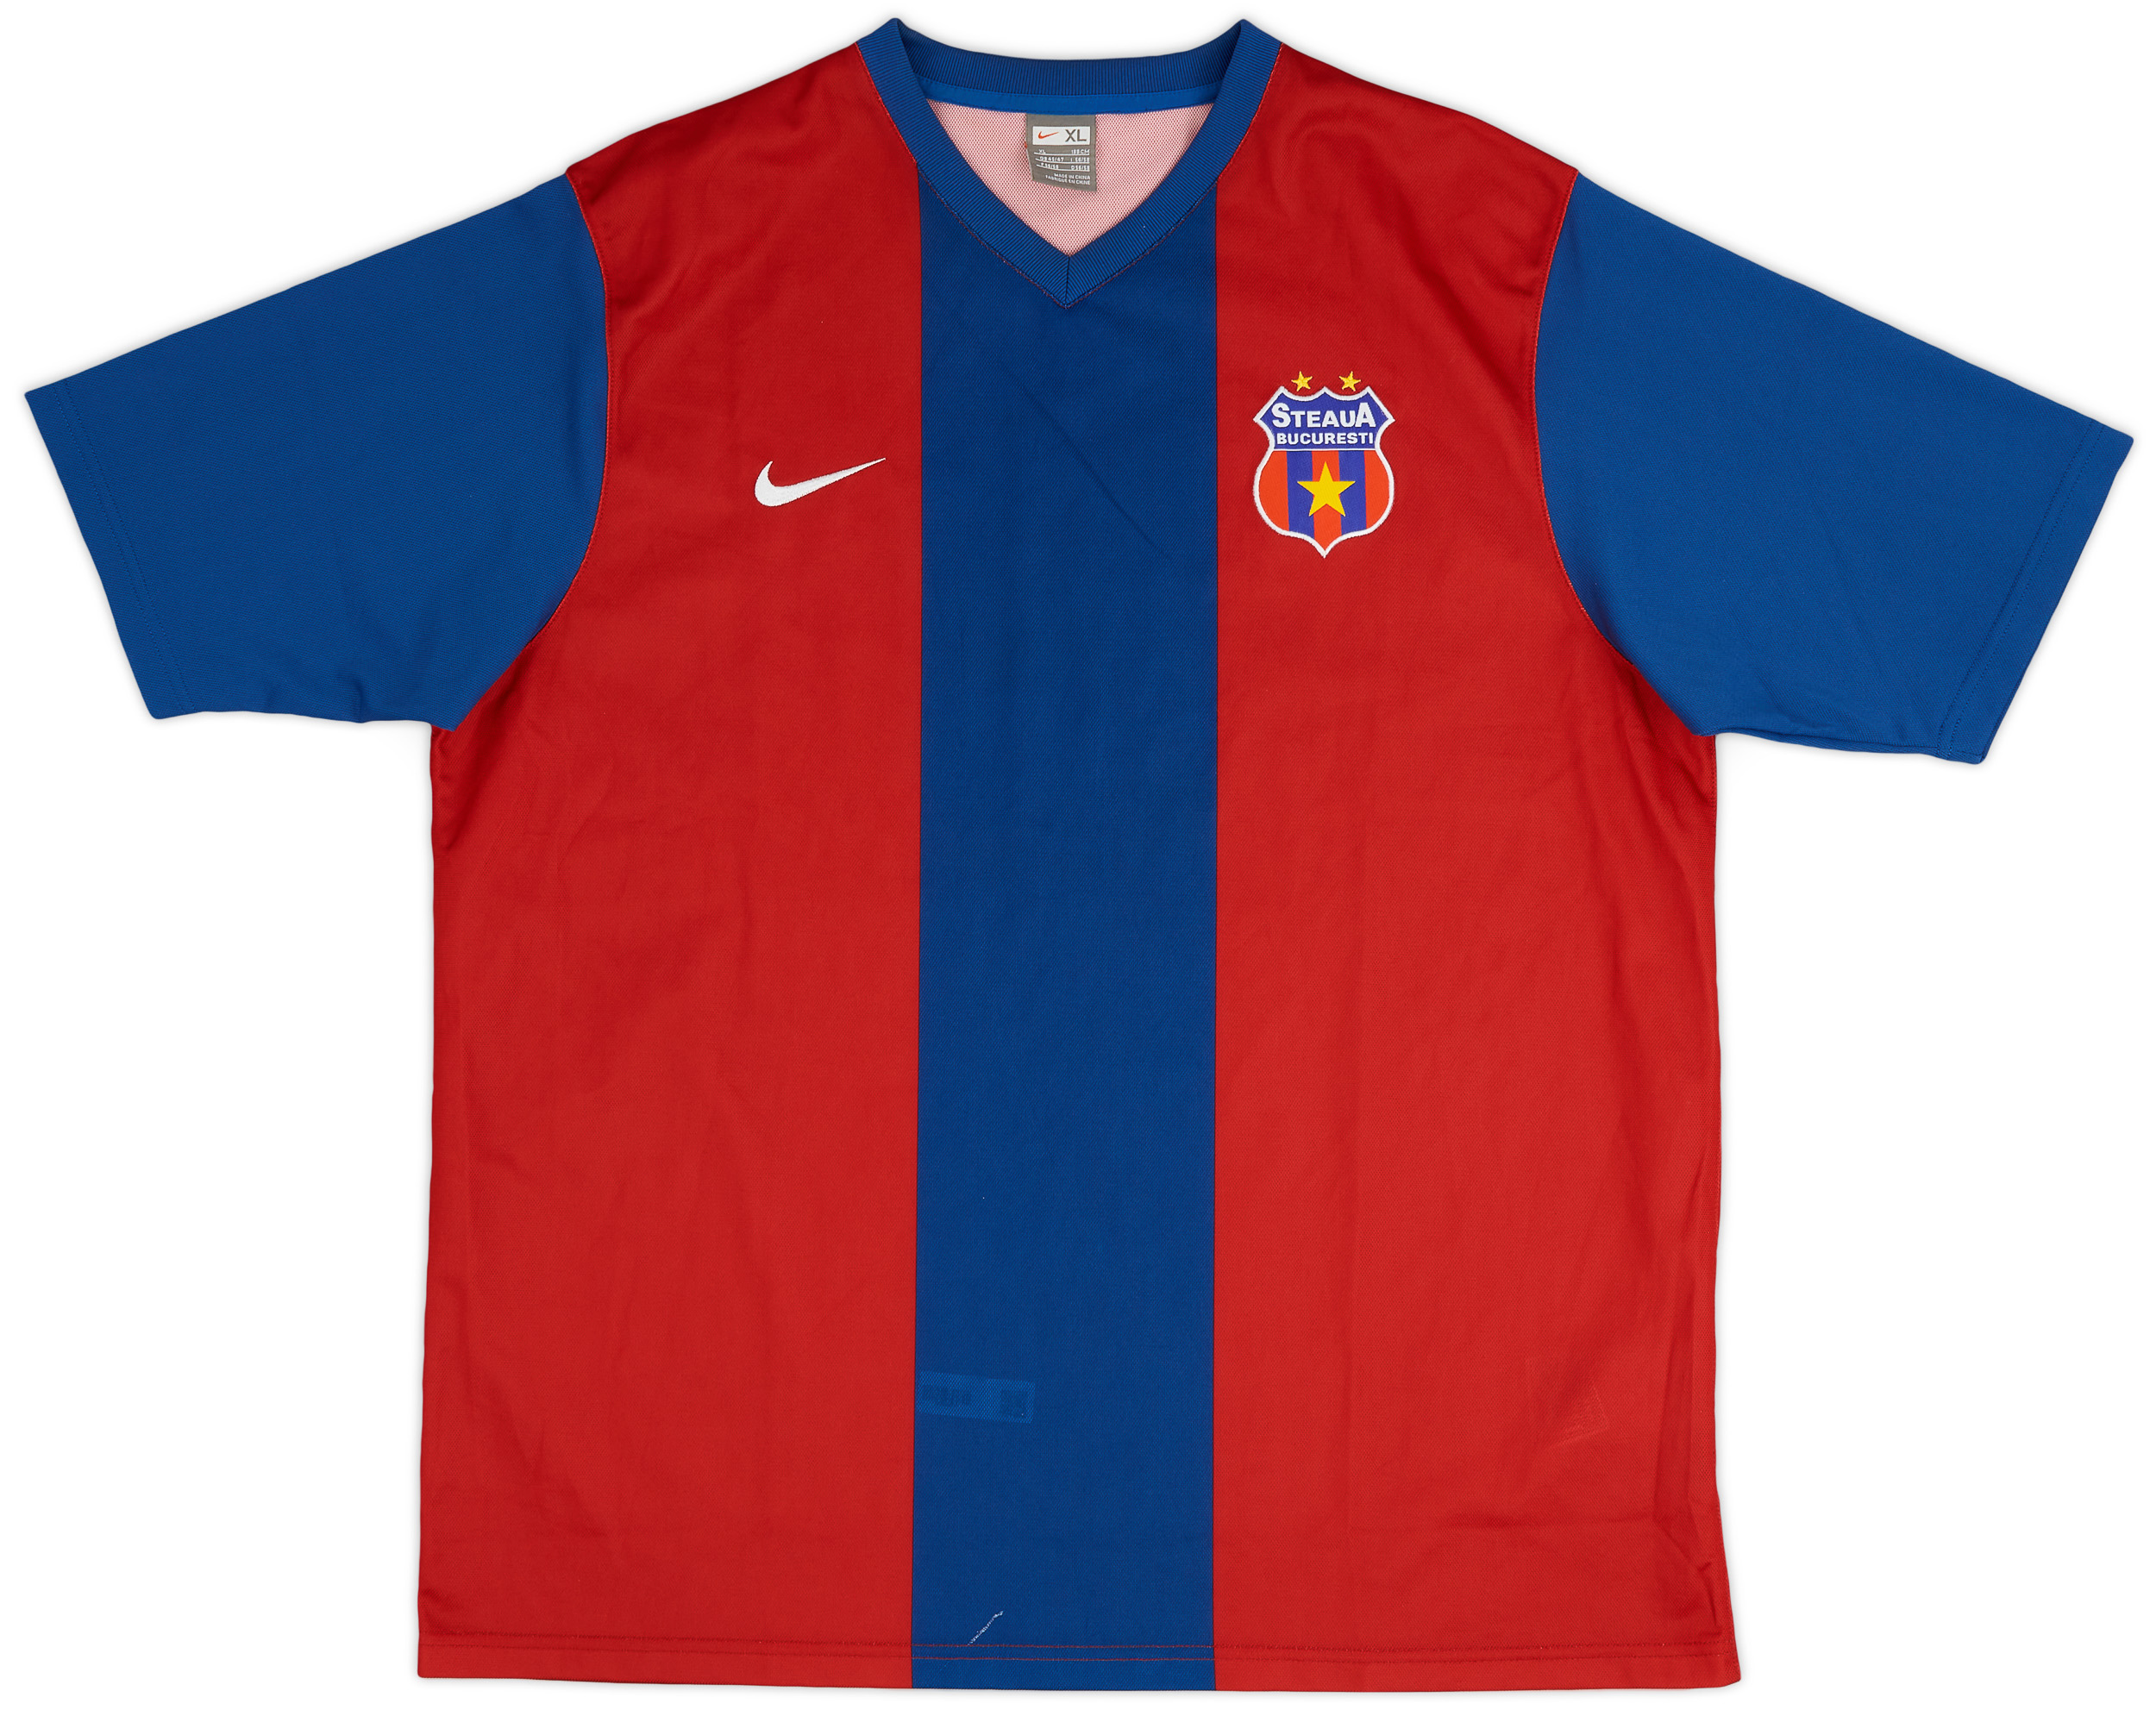 2006-07 Steaua Bucharest Home Shirt - 10/10 - ()